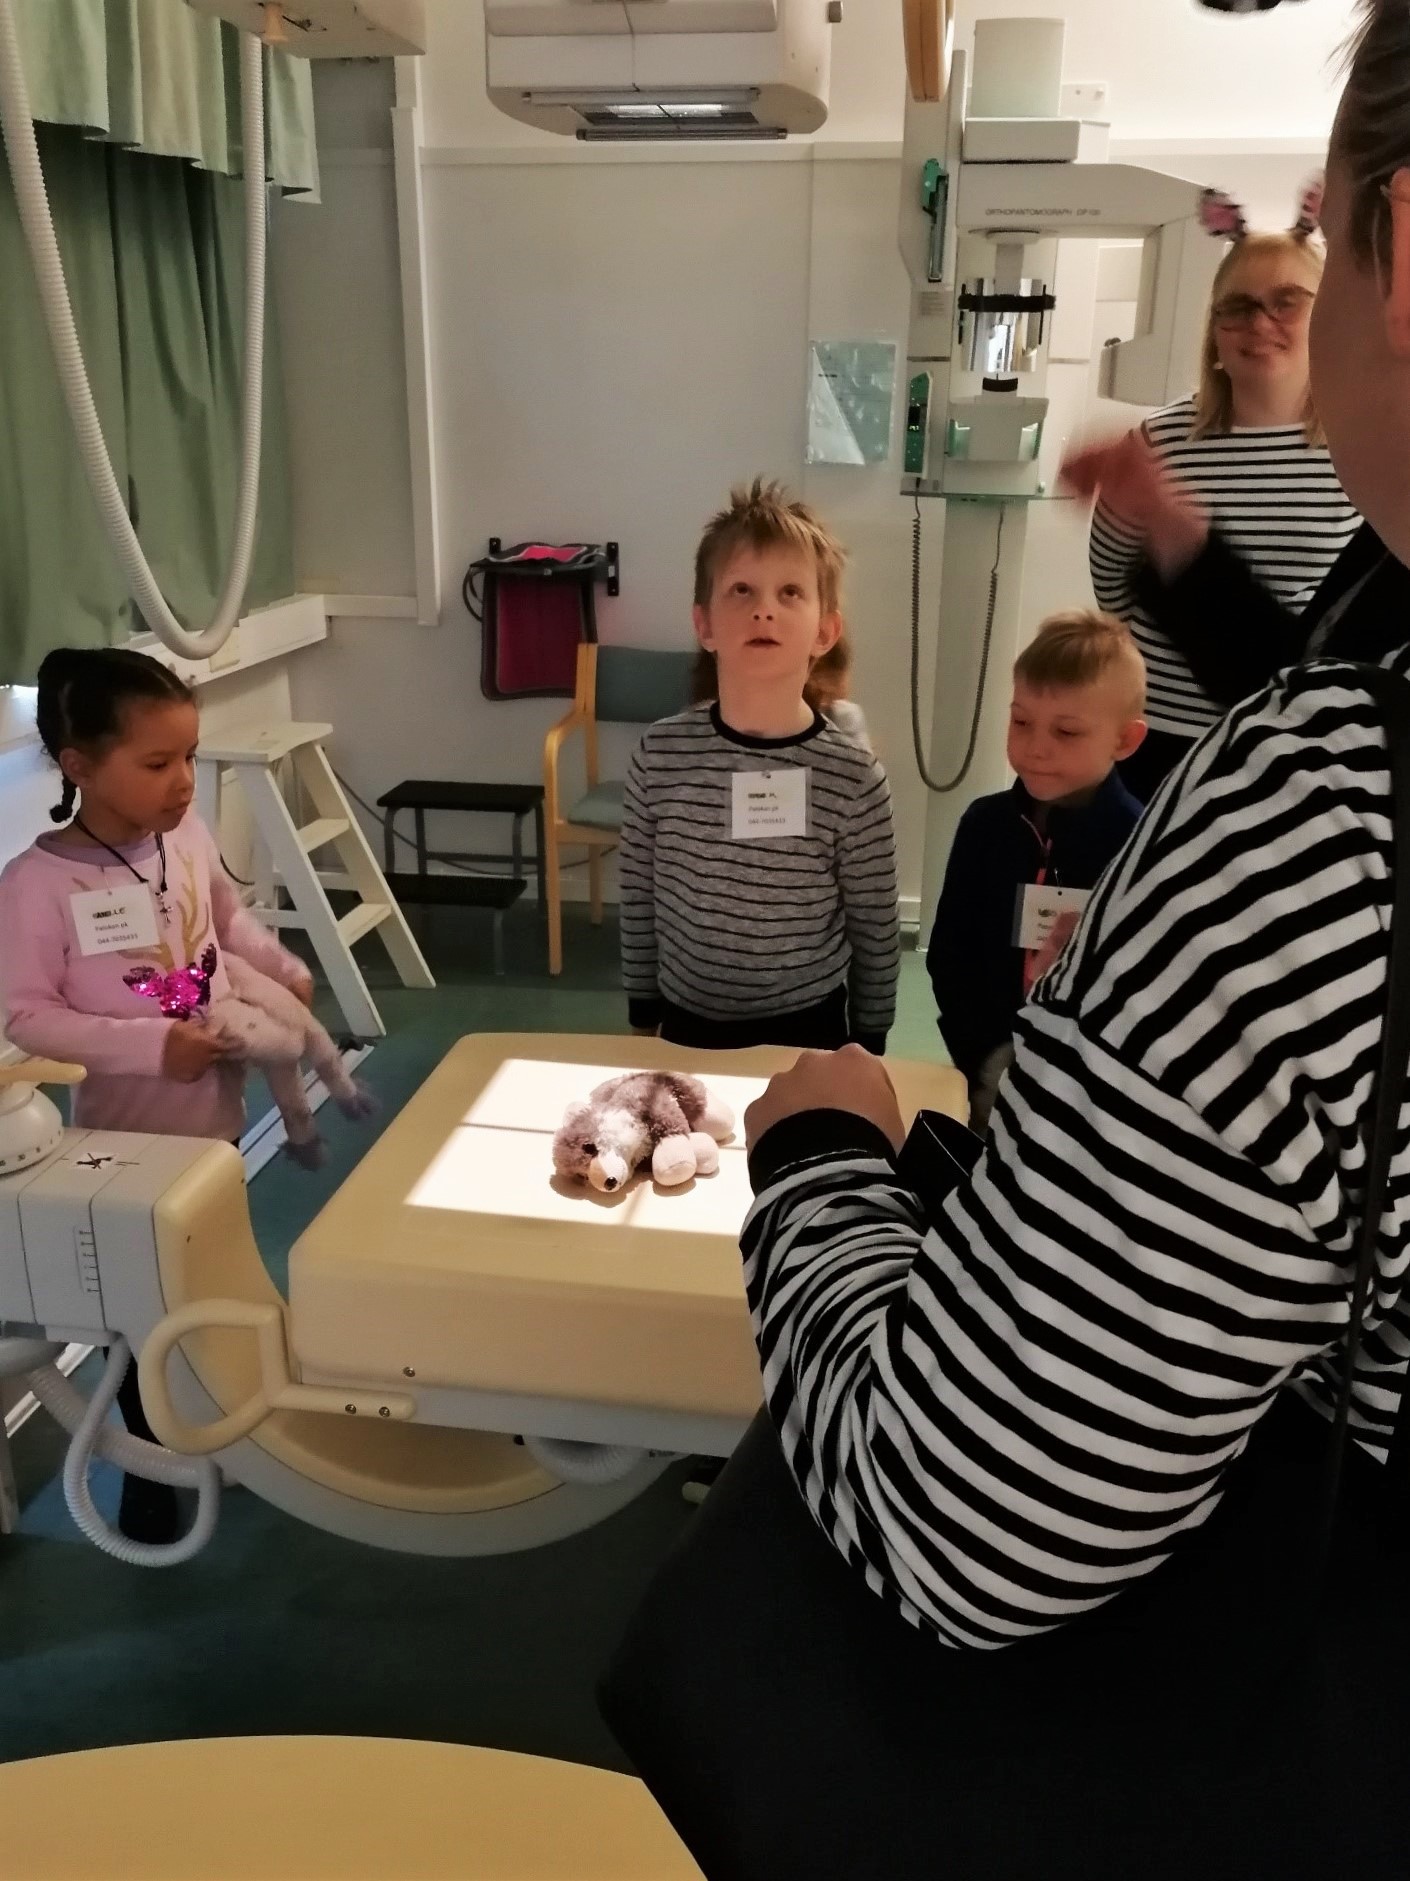 Röntgenhoitajaopiskelijat ja vierailulla olleita lapsia asettelemassa nallea natiivikuvausta varten